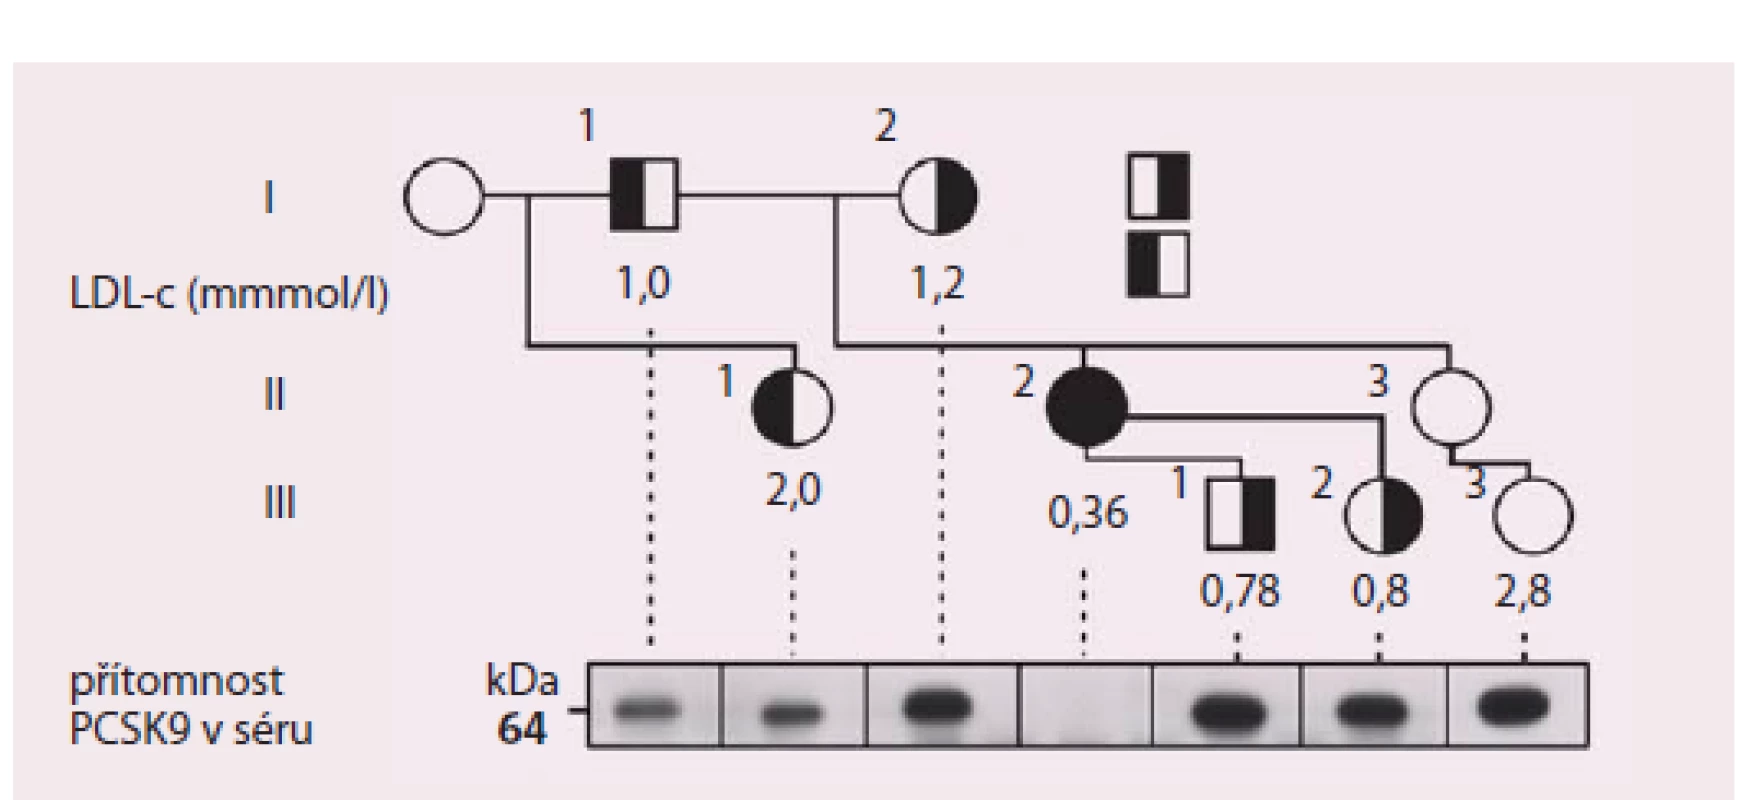 Rodokmen probandky (označena šipkou) s dvěma mutacemi snižujícími funkci PCSKS9.